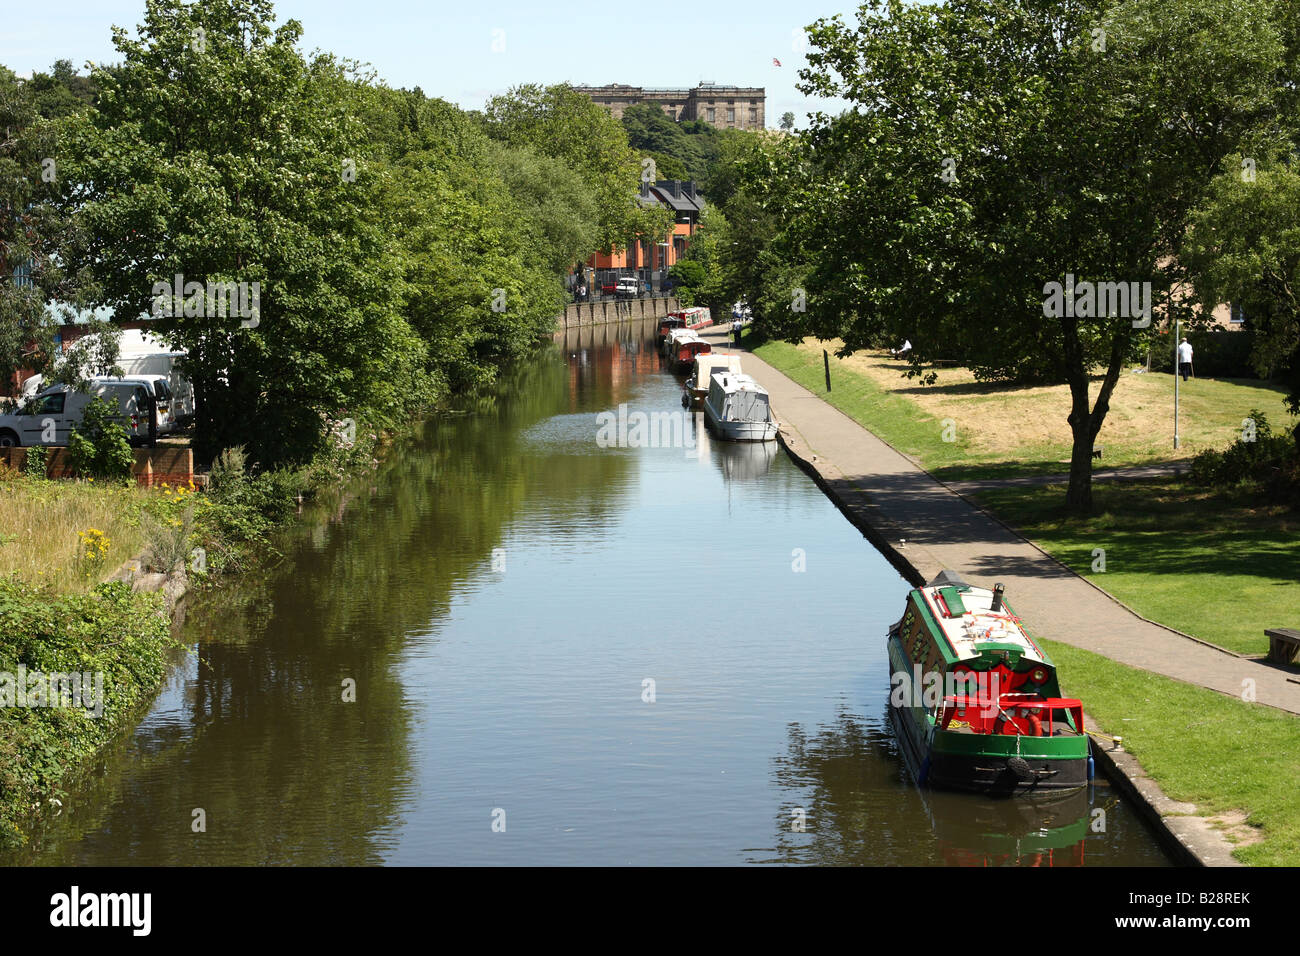 Narrowboats sur un canal avec le château de Nottingham Nottingham dans la distance Banque D'Images